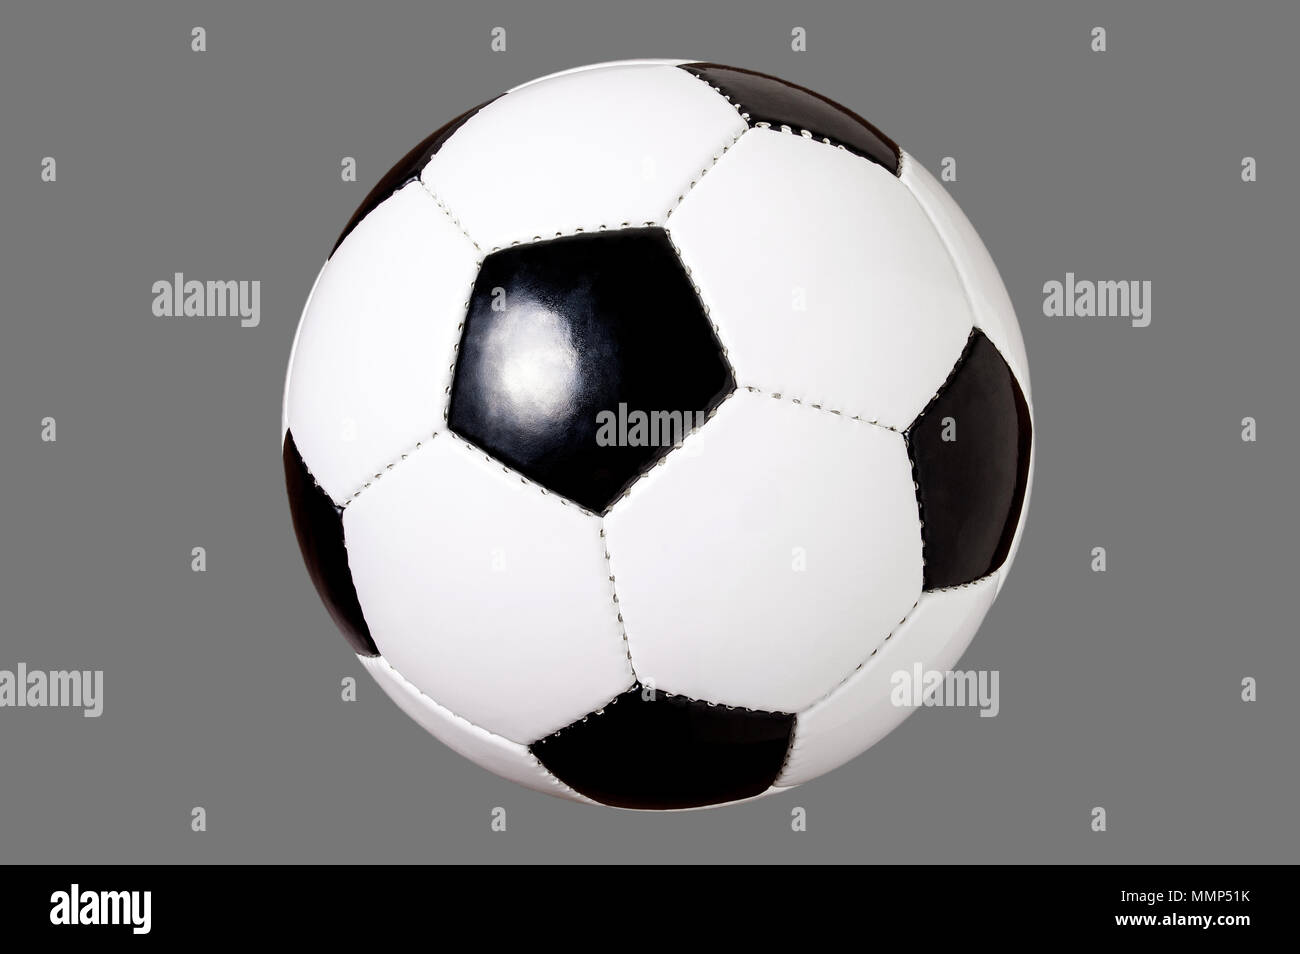 Pallone da calcio isolato, calcio tagliato fuori, lo sfondo grigio, bianco e nero Foto Stock